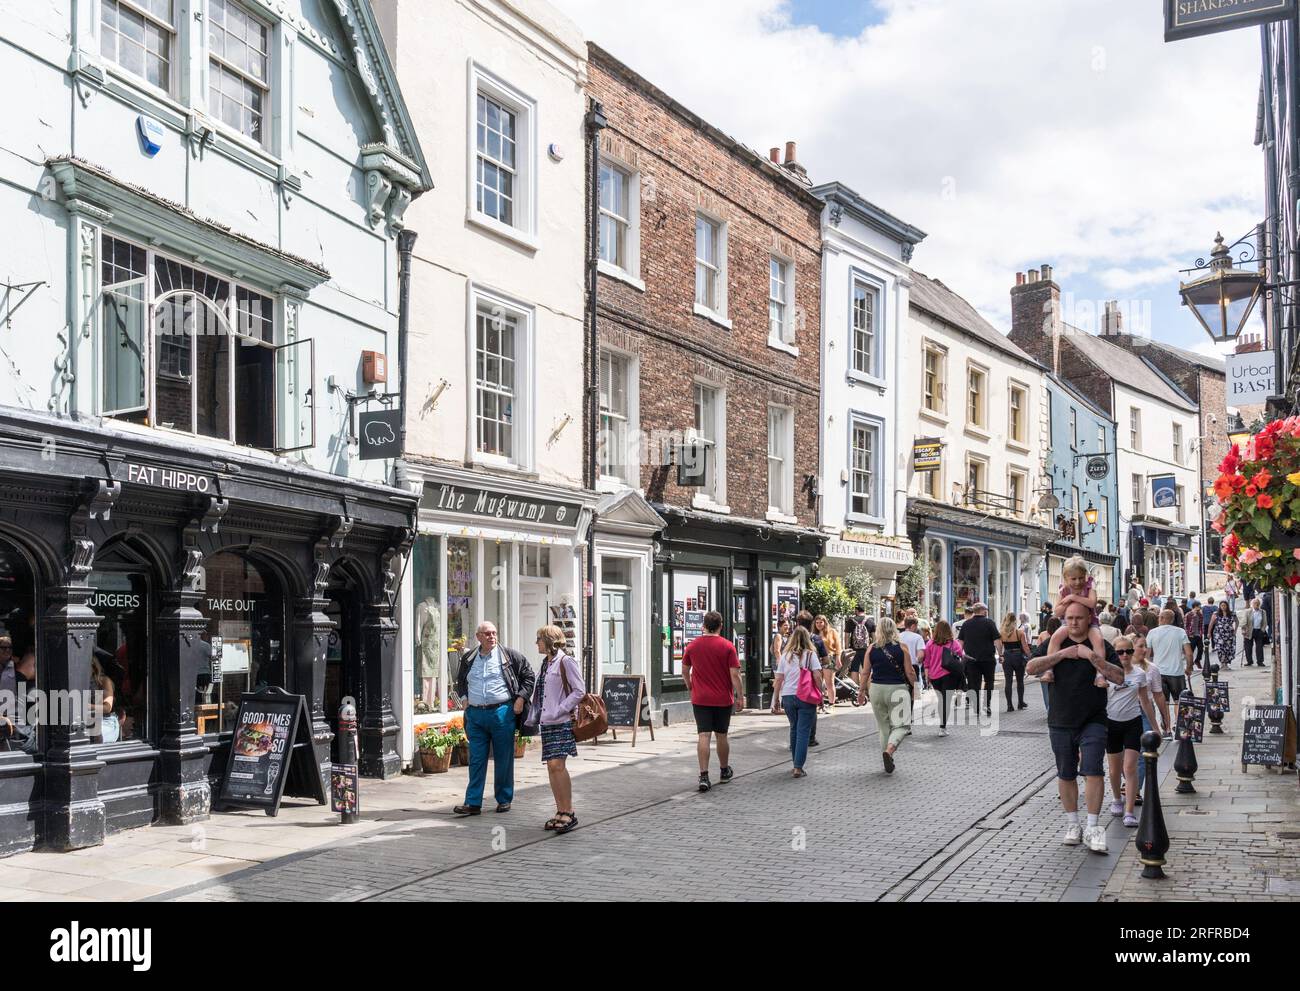 Personnes marchant le long de Saddler Street dans le centre-ville de Durham, Angleterre, Royaume-Uni Banque D'Images